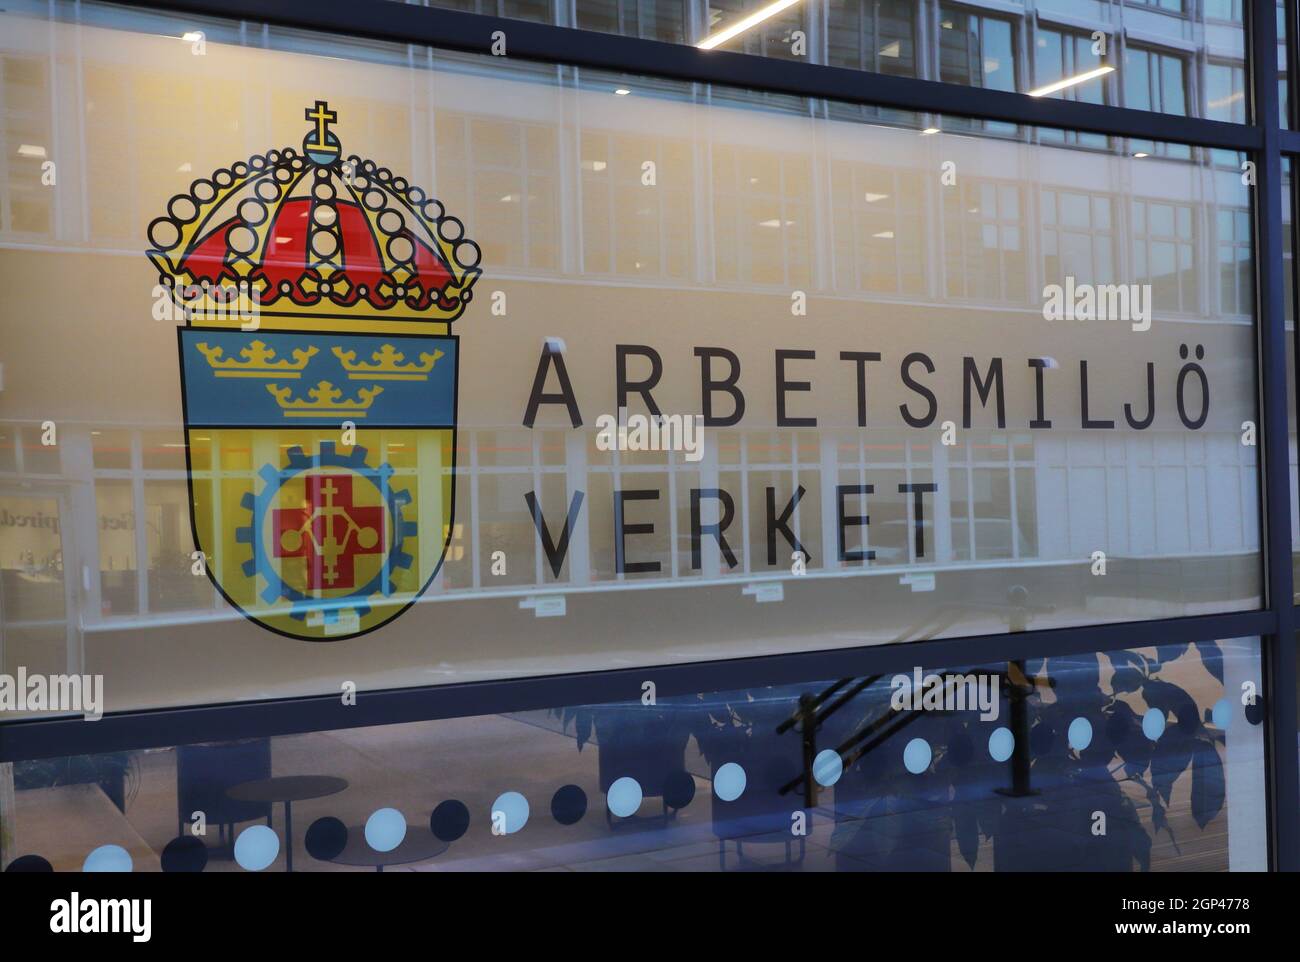 Solna, Schweden - 16. September 2021: Die schwedische Arbeitsumweltbehörde (arbetsmilejoverket), Büroeingang und Schild. Stockfoto